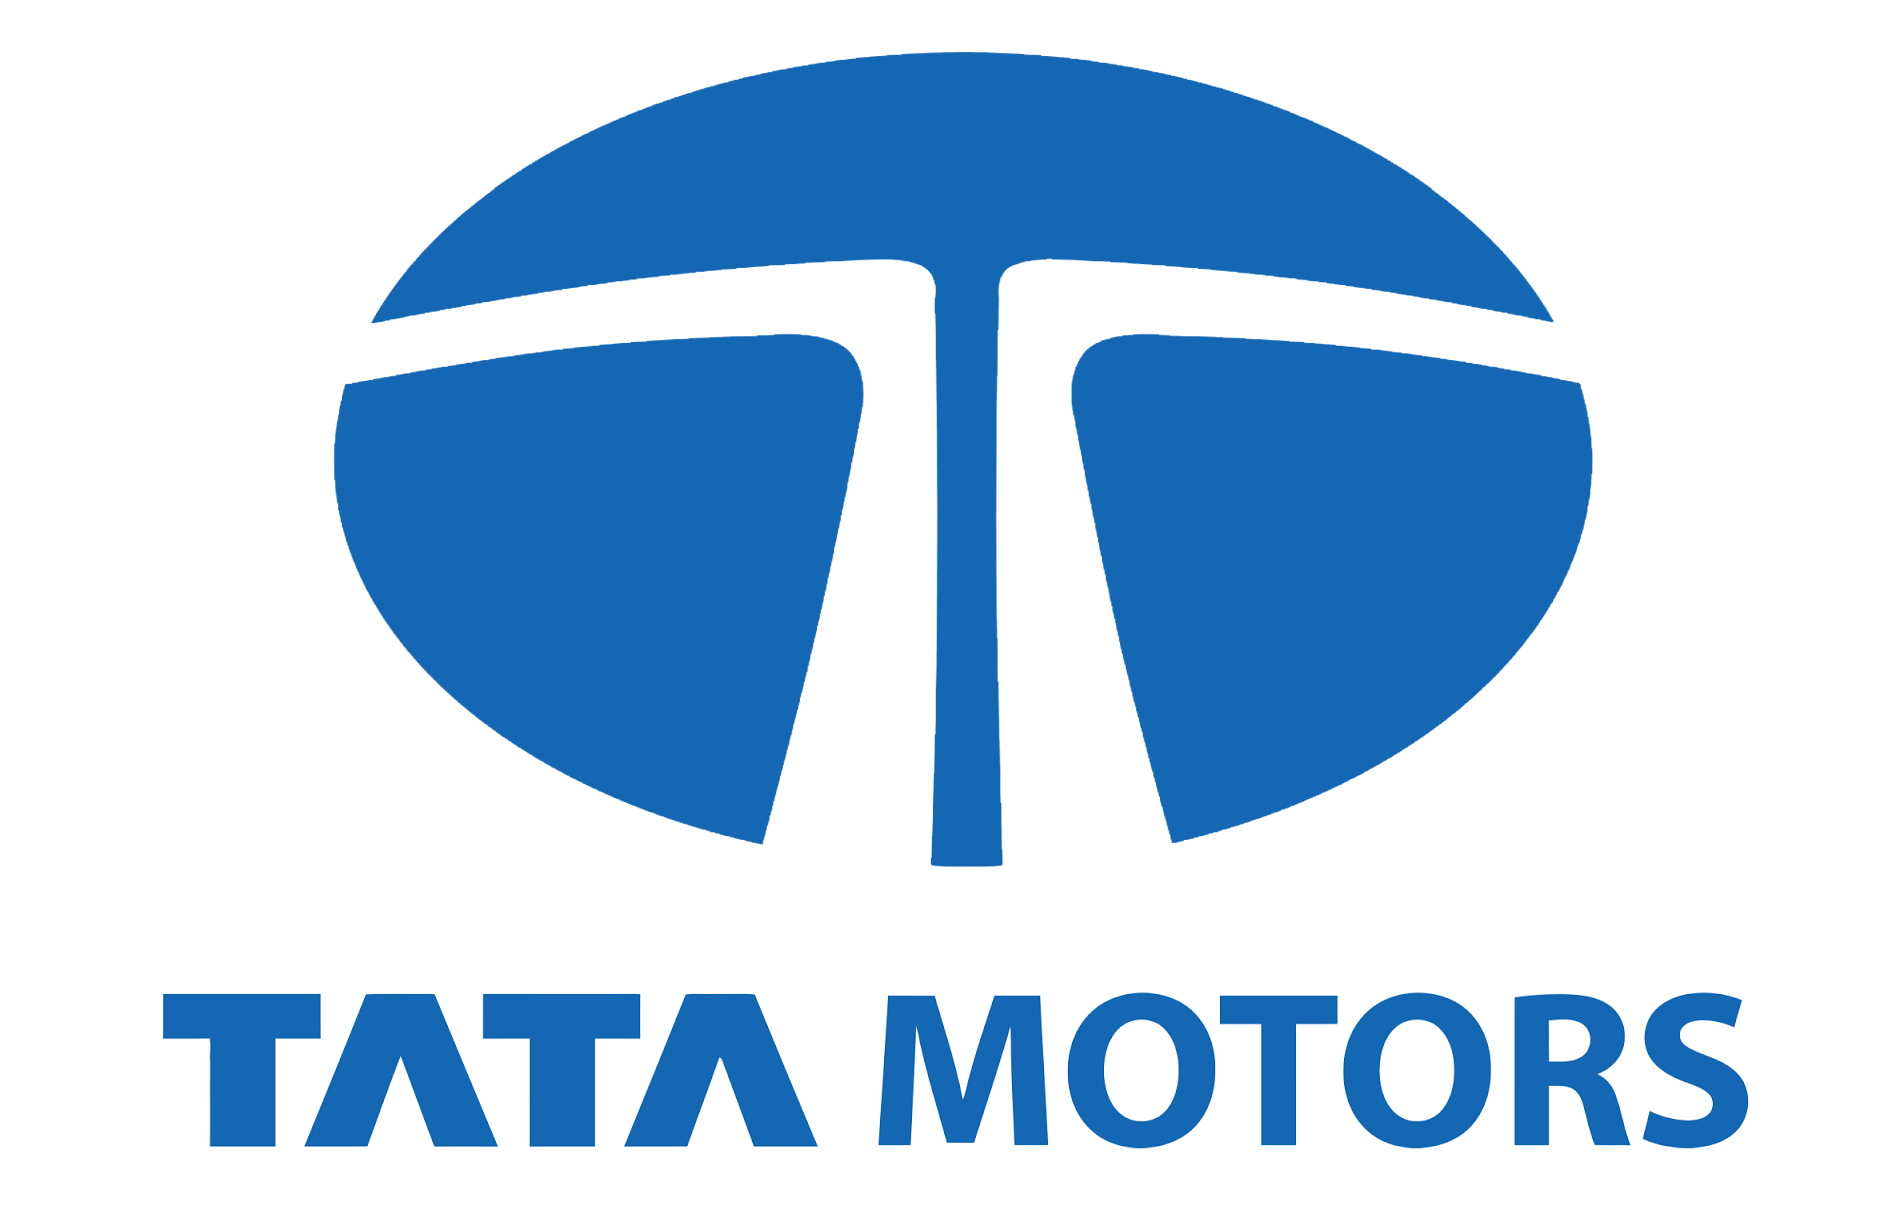 Tata Motors Cars Showroom - Trivandrum Motors|Show Room|Automotive